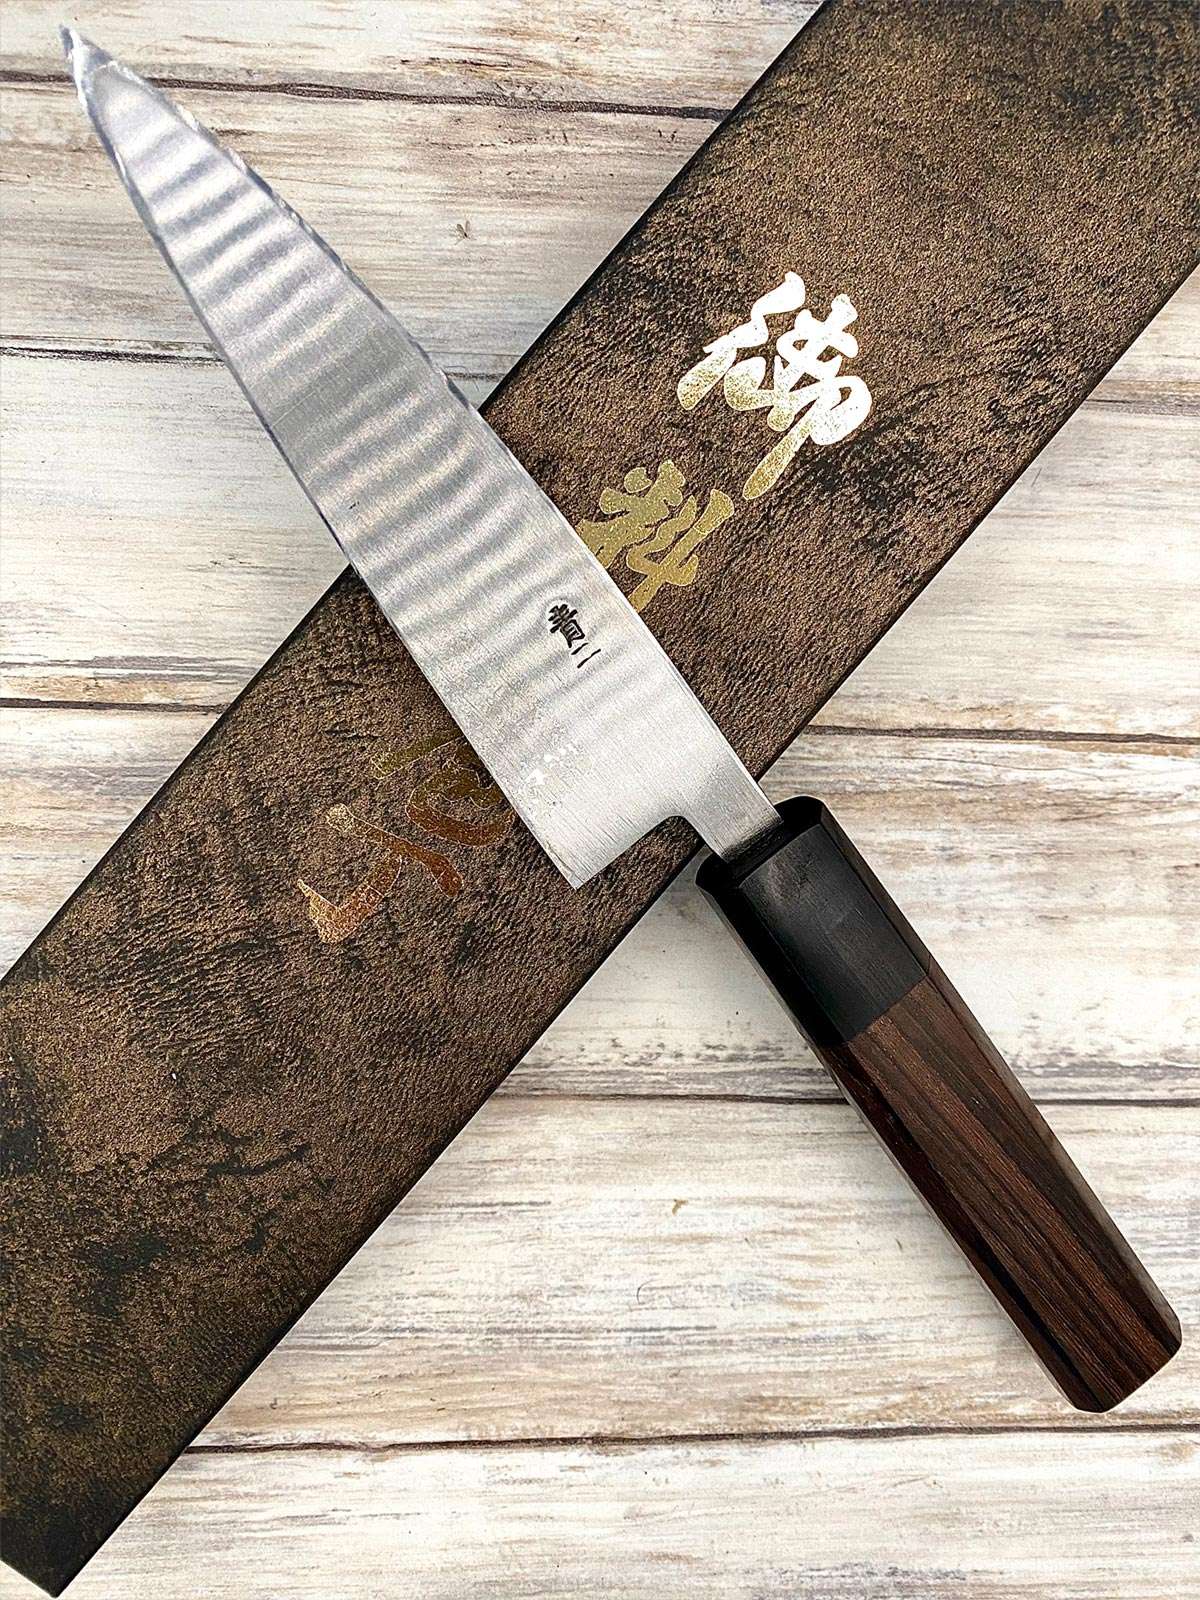 Acheter un Couteau Japonais artisanal Petty Ginsan 12 cm Kurouchi à Paris meilleur vente de couteaux de cuisine nippon grande marque de qualité